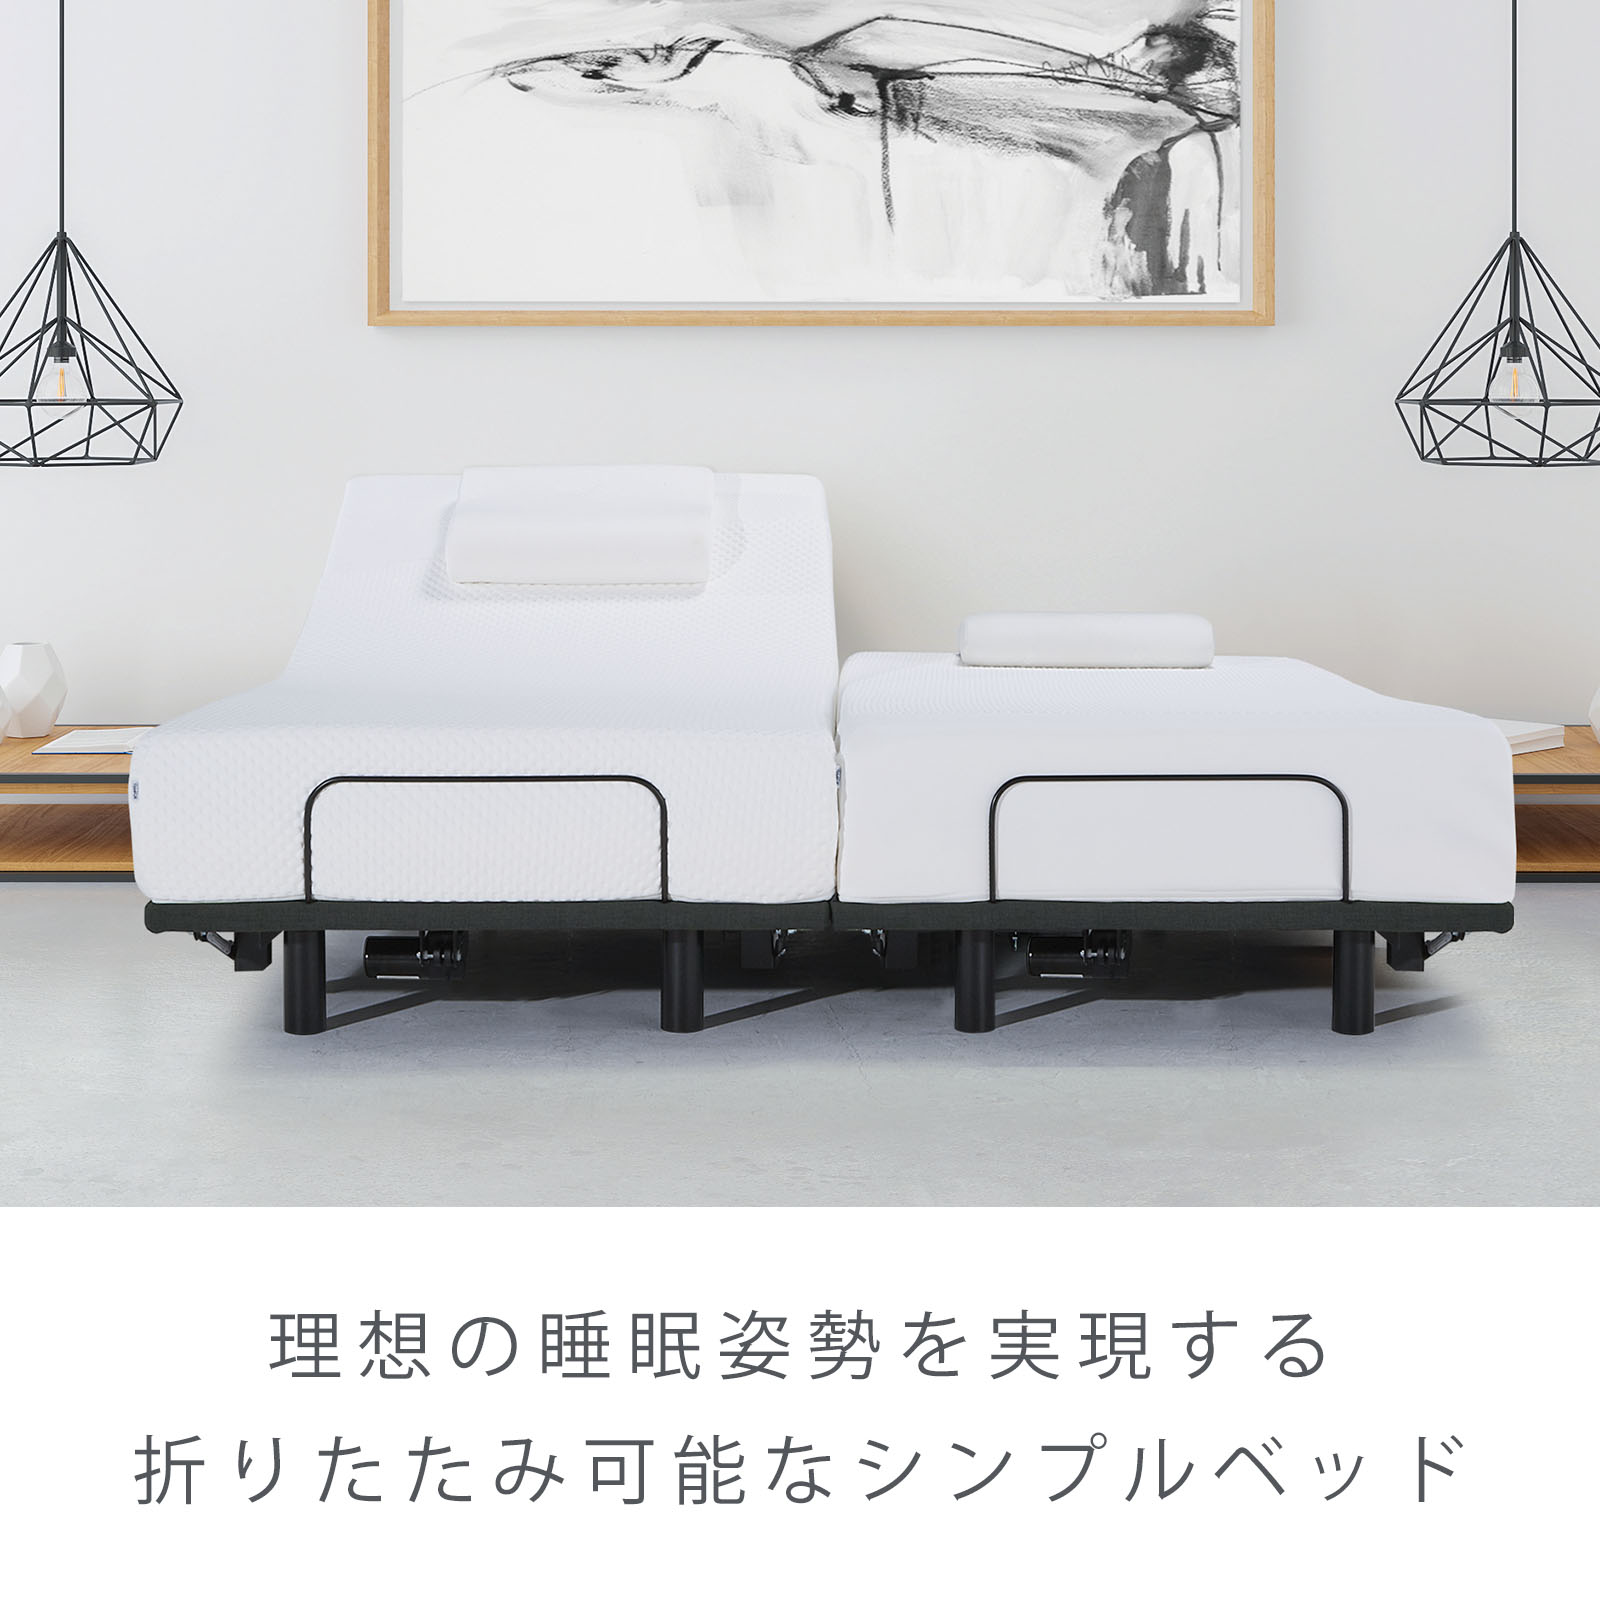 テンピュール Tempur ゼロジー(R) フォールダブルベッドセット 2点 ダブル 電動リクライニングベッド マットレス ワン 厚み20cm  日本正規品 保証なし ベッド